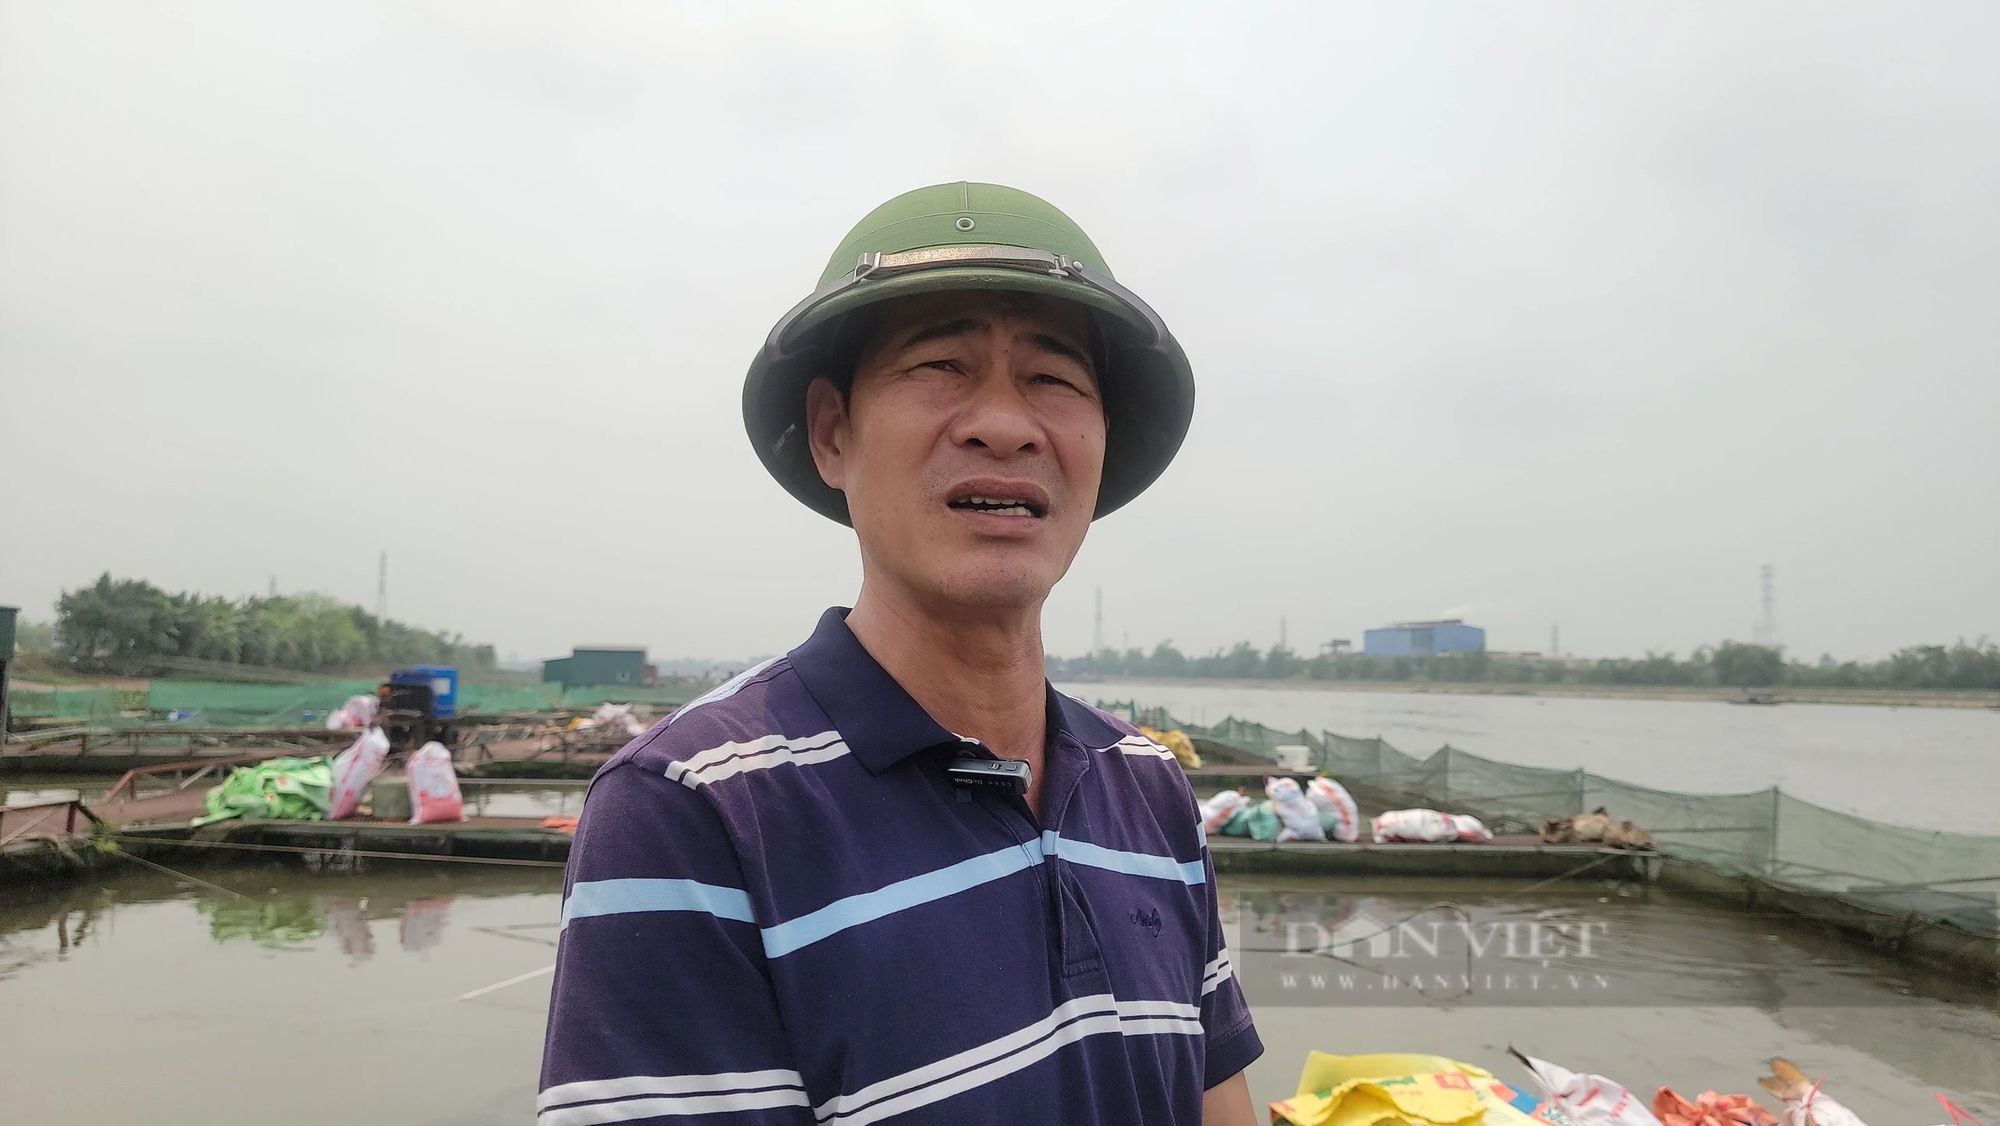 Trăm tấn cá chết bất thường trên sông Thái Bình ở TP Hải Dương, dân buồn hụt hẫng, có nhà "trôi tiền tỷ"- Ảnh 8.